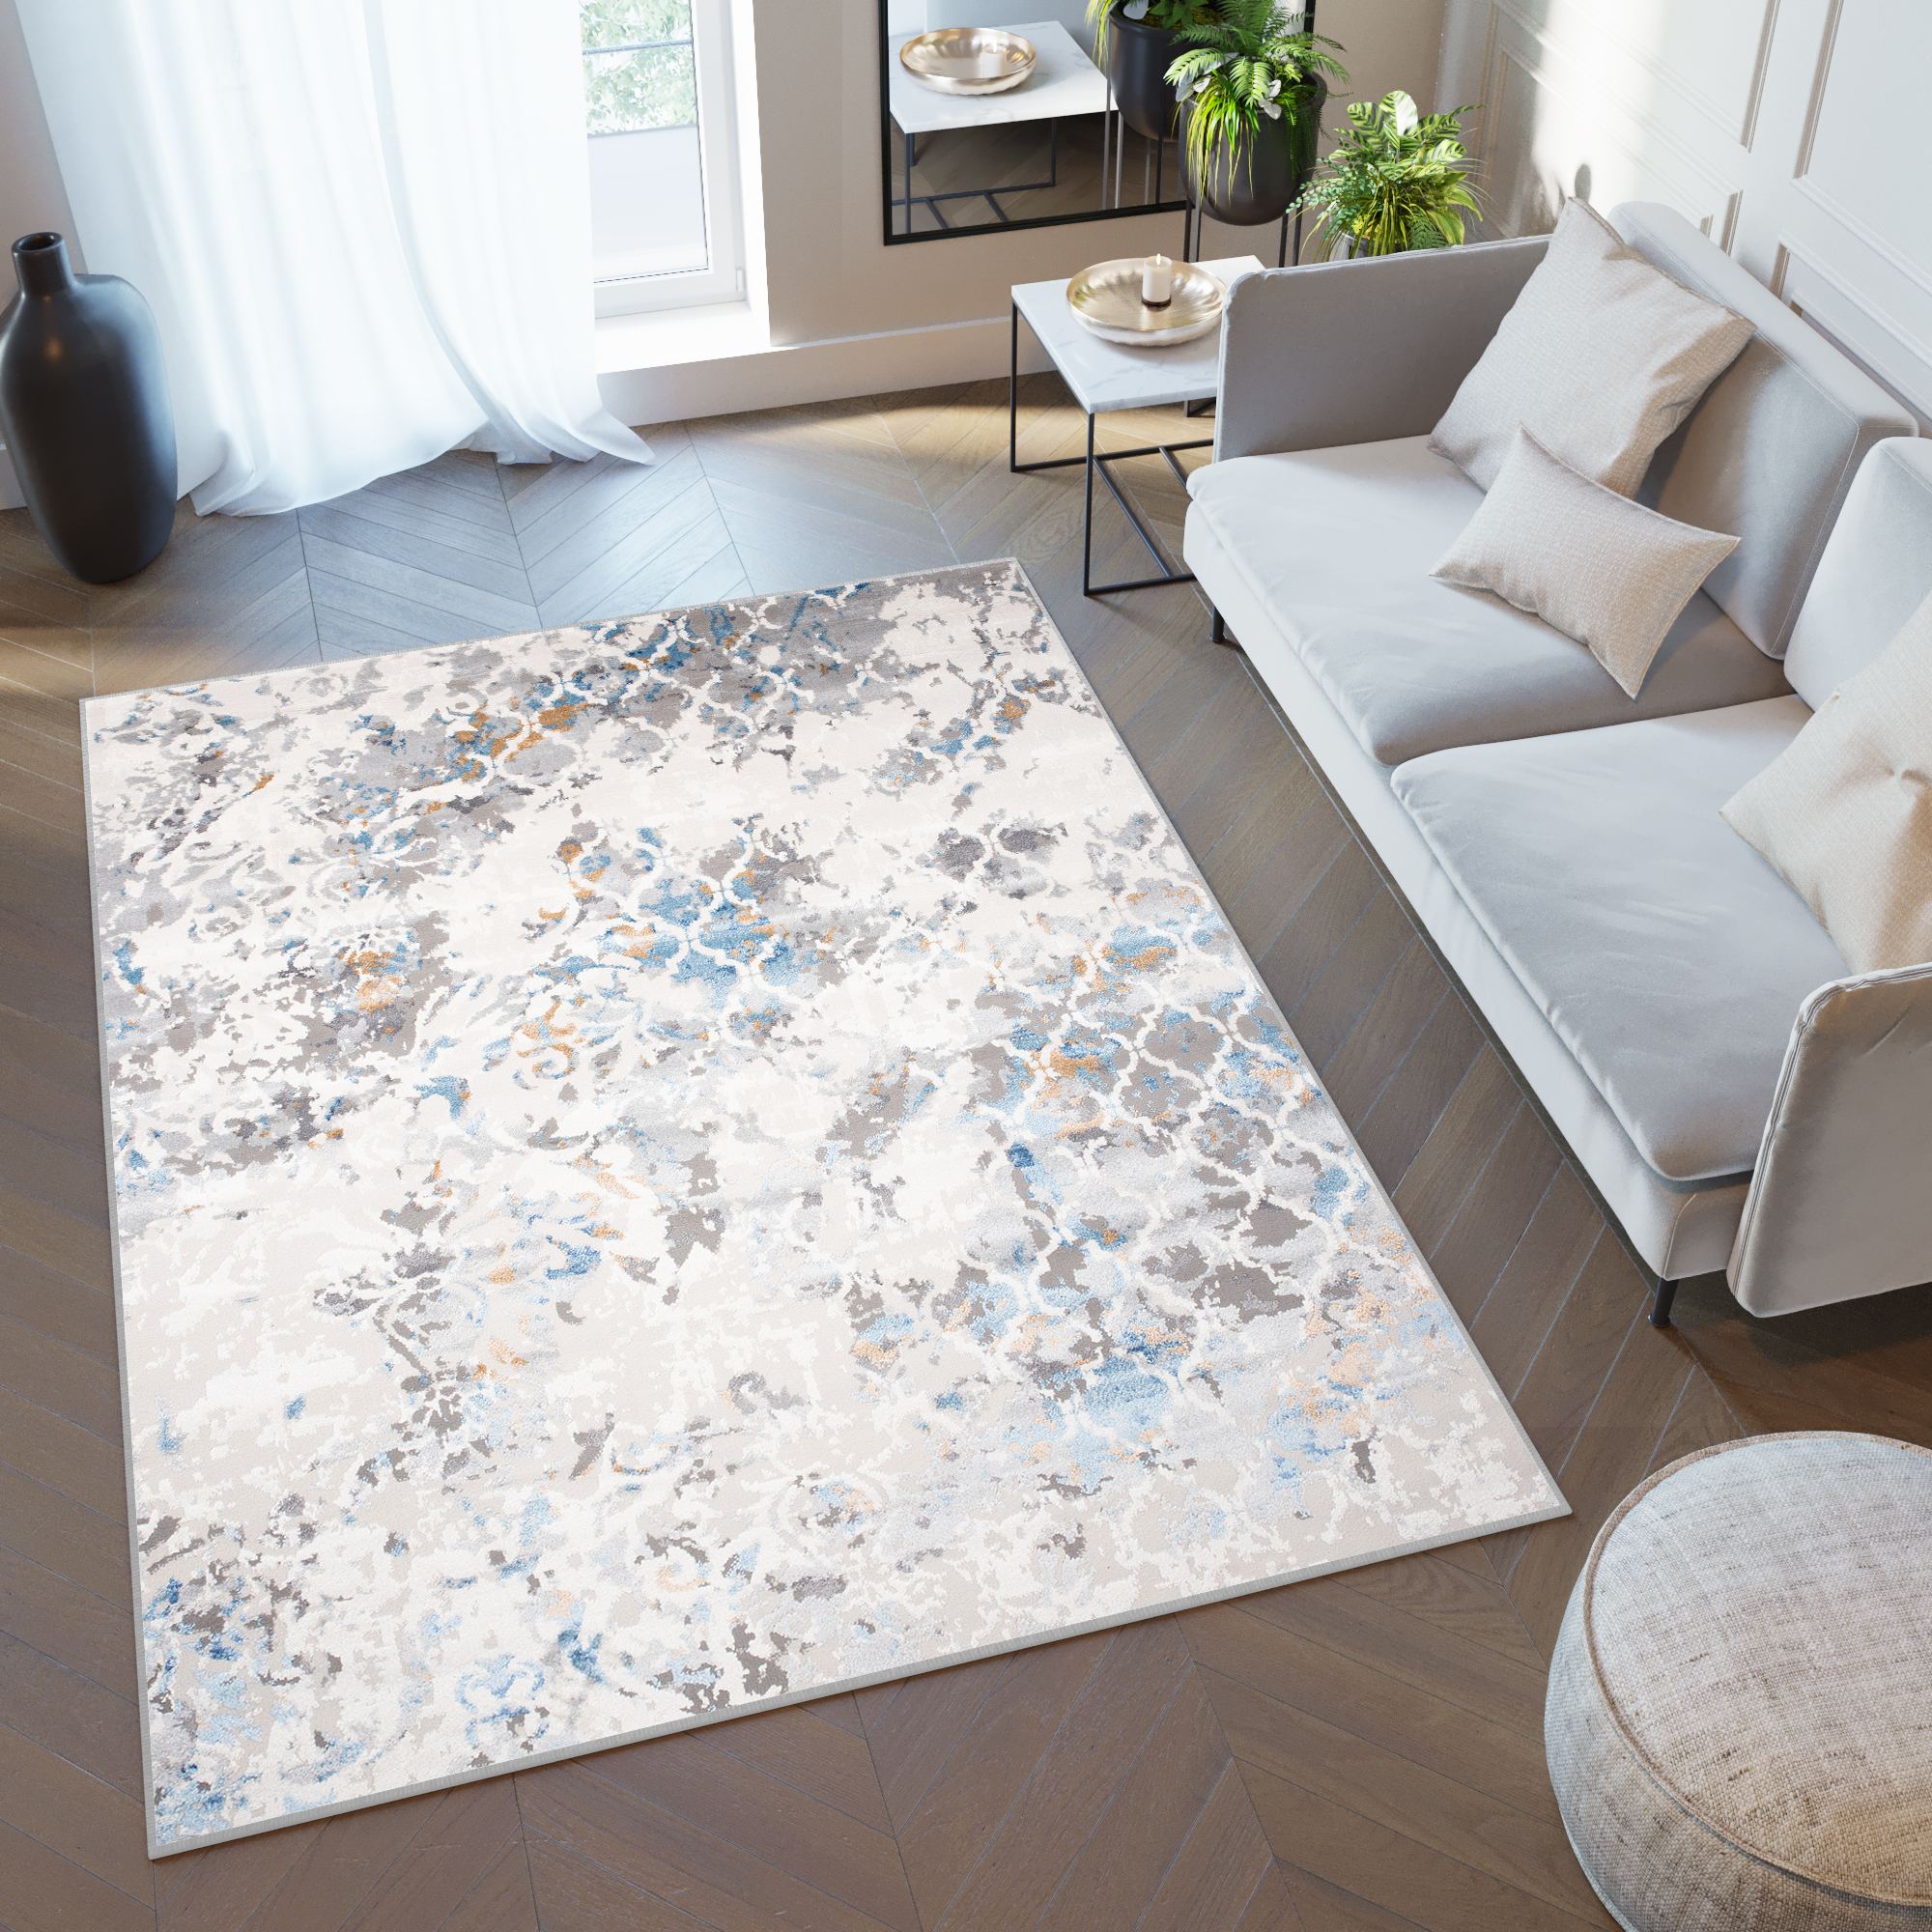 Teppich Kurzflor Grau Beige Trellis Muster Marrokanisch Wohnzimmer  Schlafzimmer | eBay